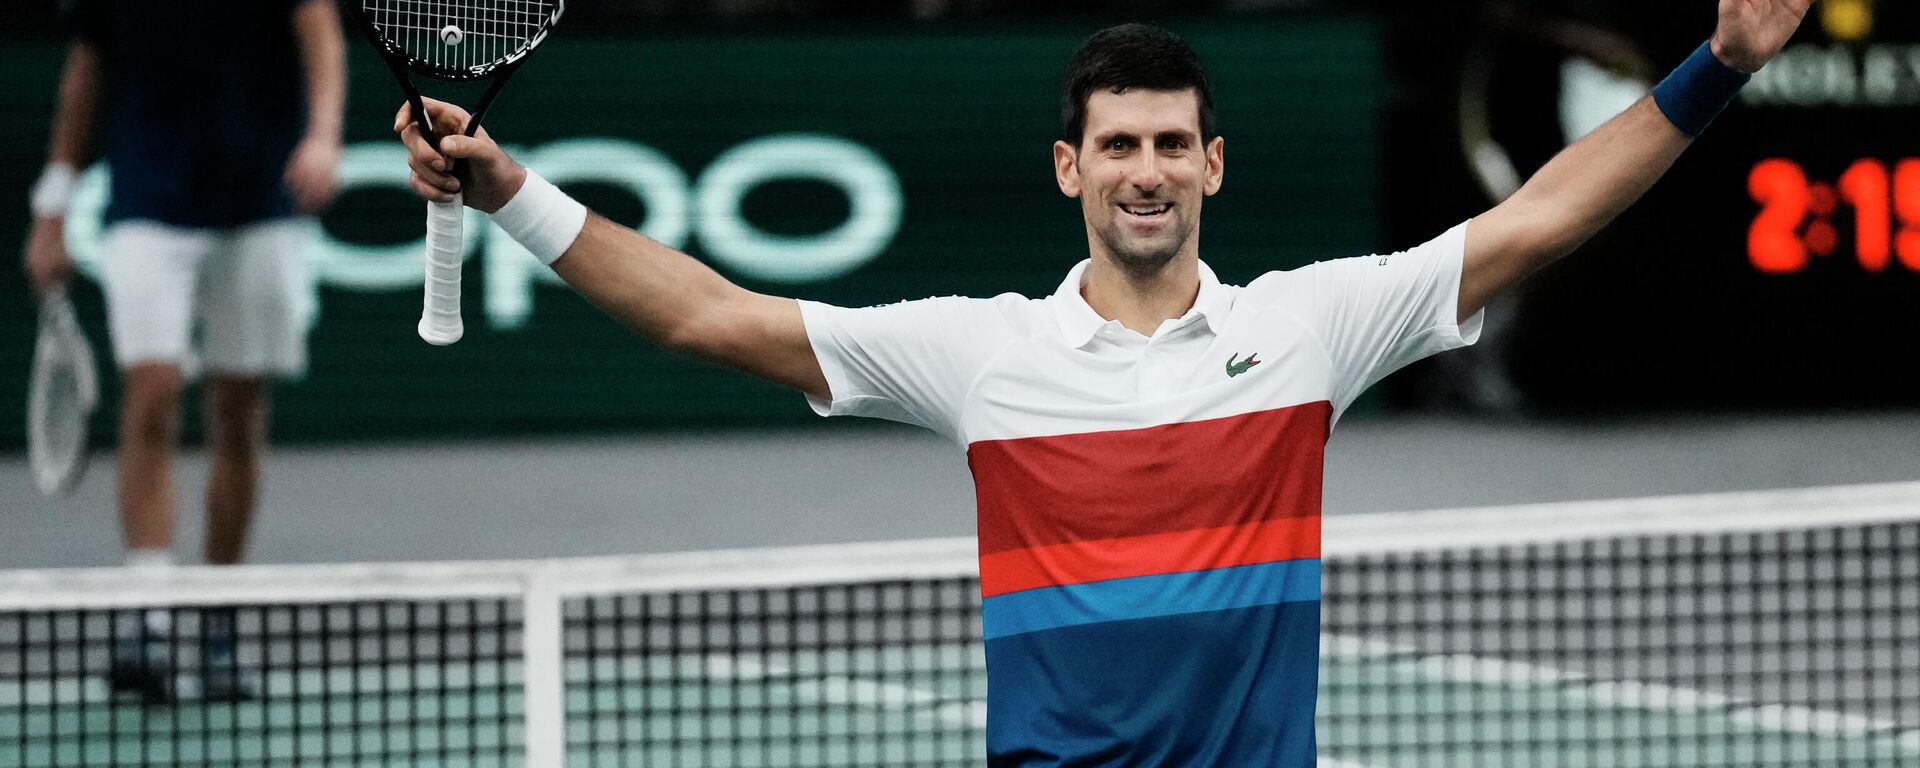 Najbolji teniser sveta Novak Đoković osvojio Masters u Parizu - Sputnik Srbija, 1920, 09.11.2021